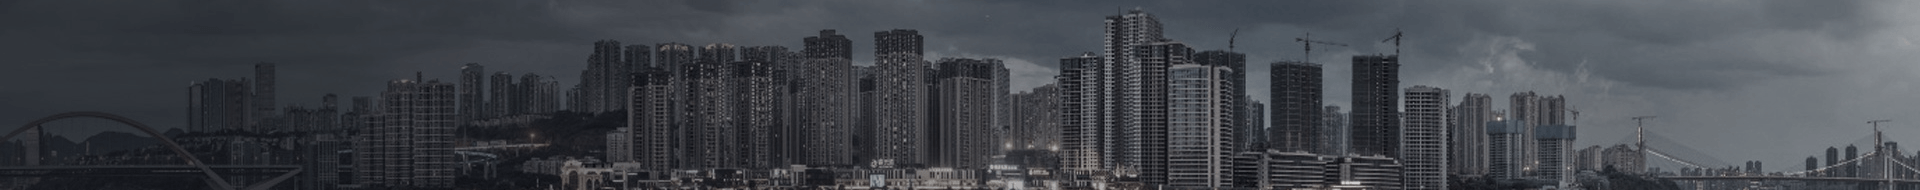 金辉地产-地产开发-住宅项目-大城系